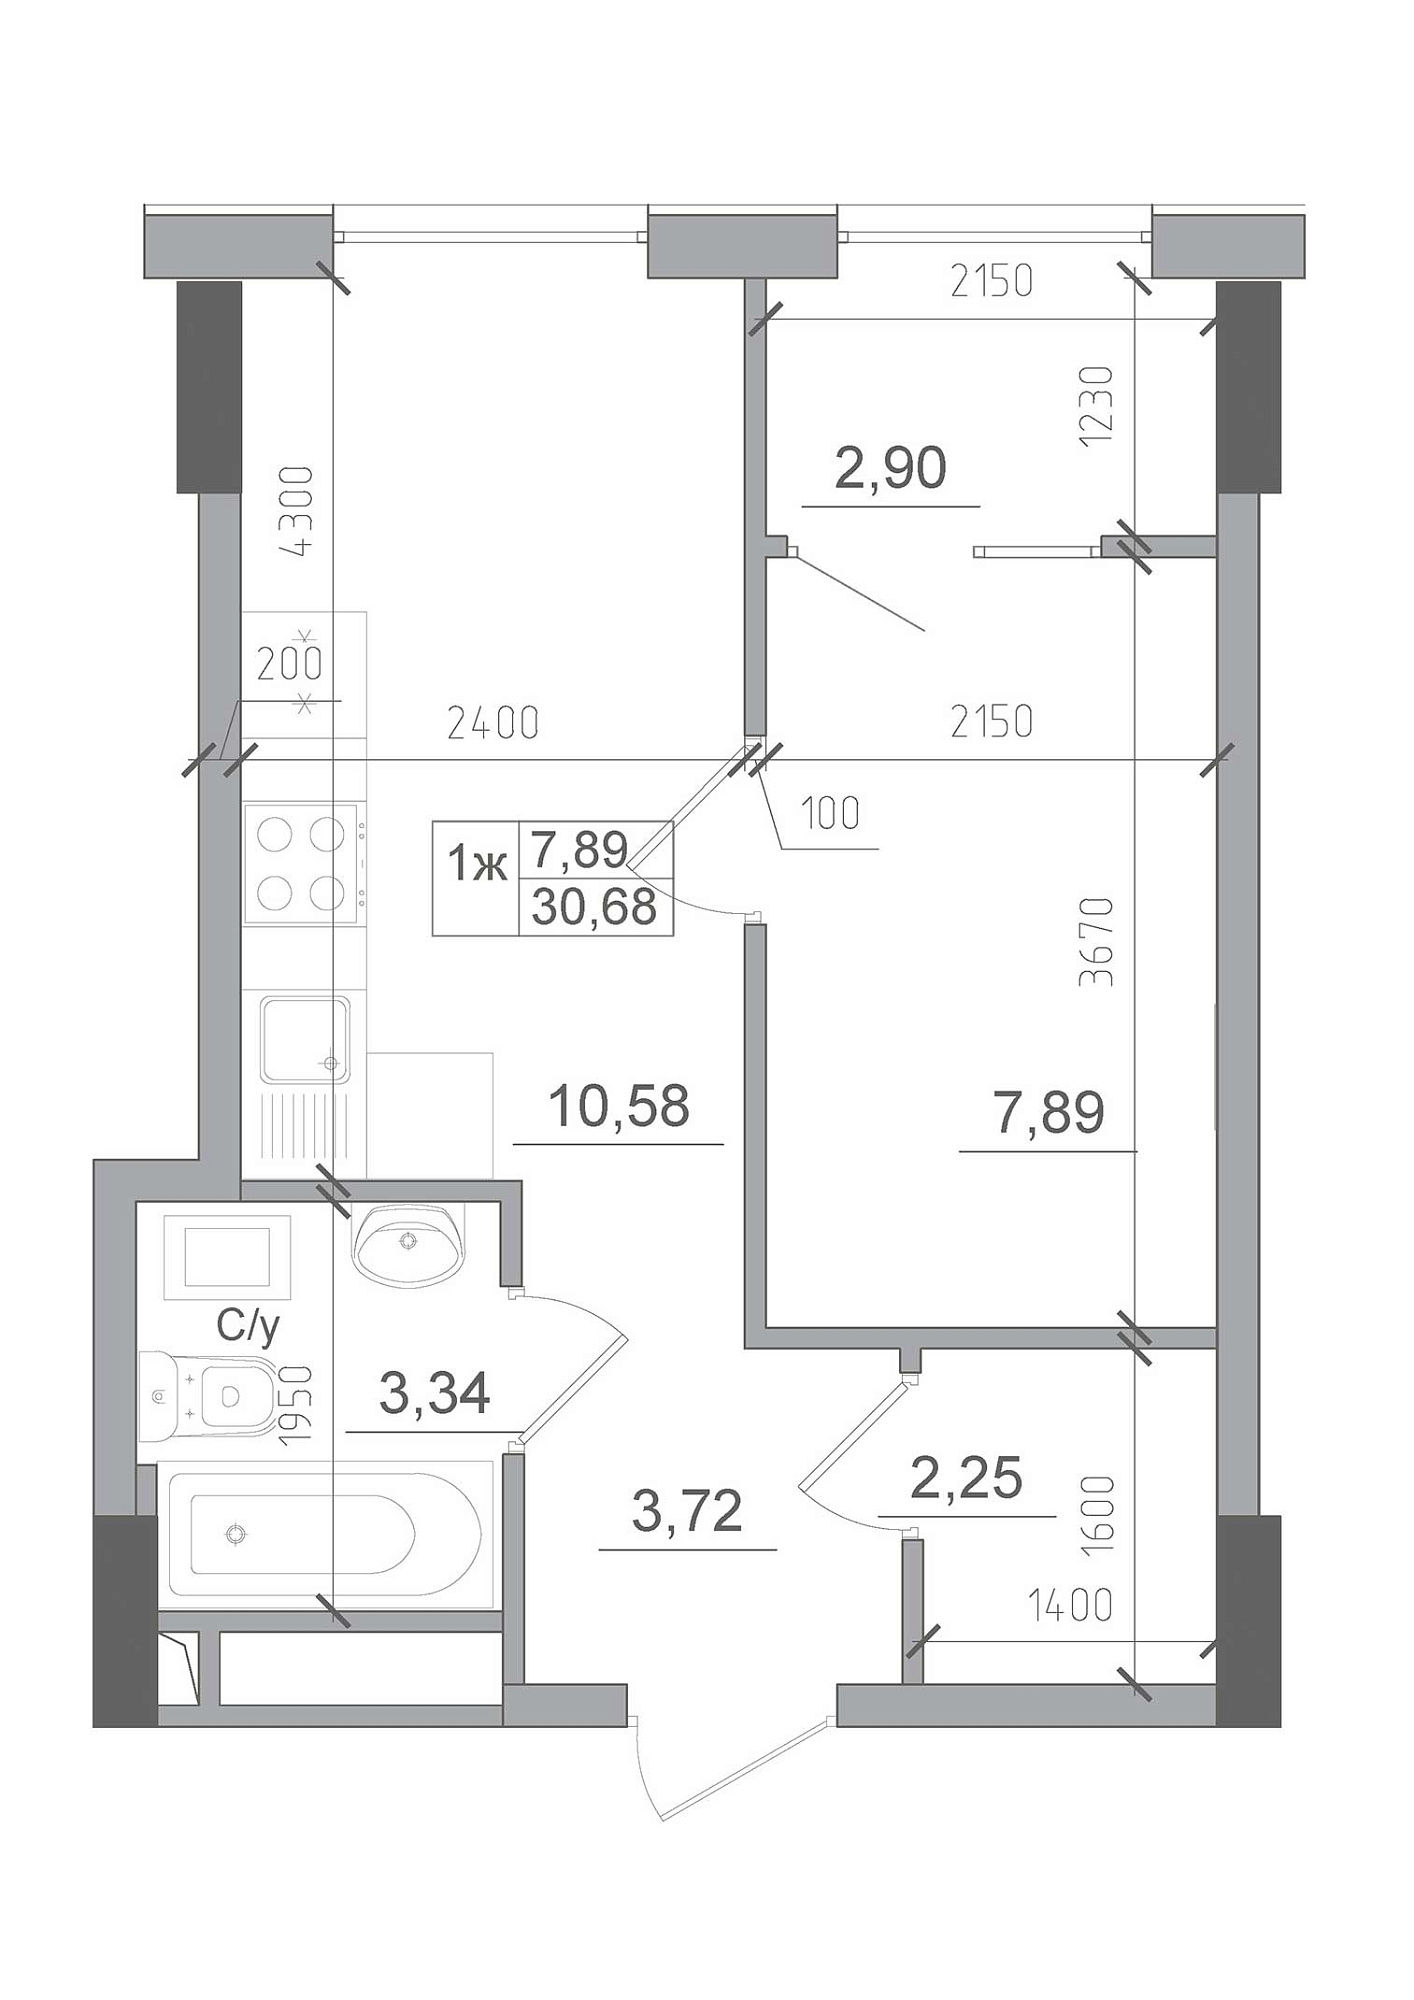 Планування 1-к квартира площею 30.68м2, AB-22-03/00012.